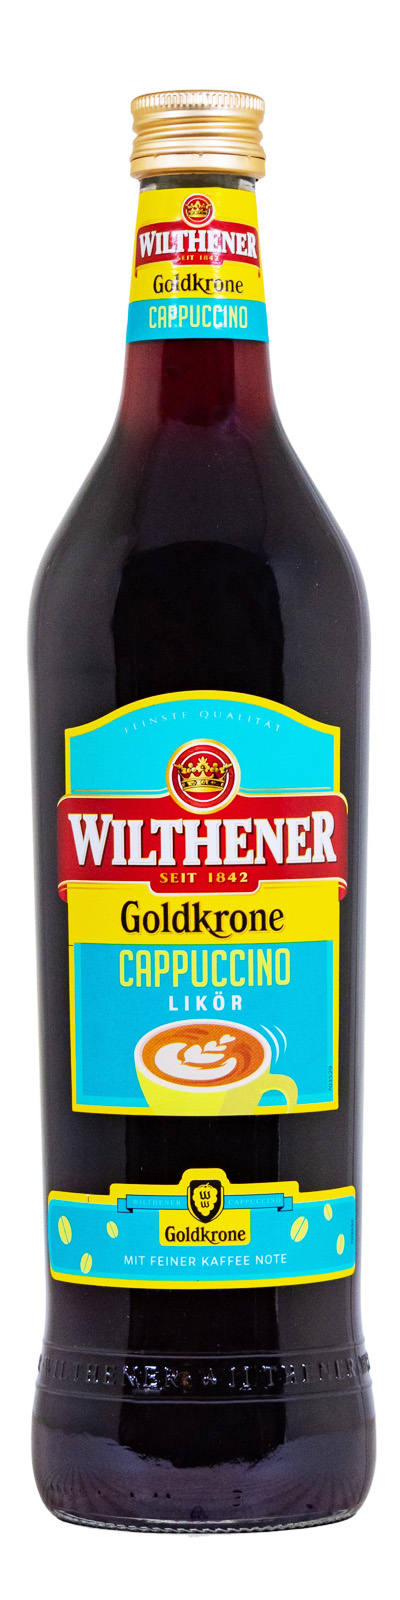 Goldkrone Cappuccino Likör günstig kaufen